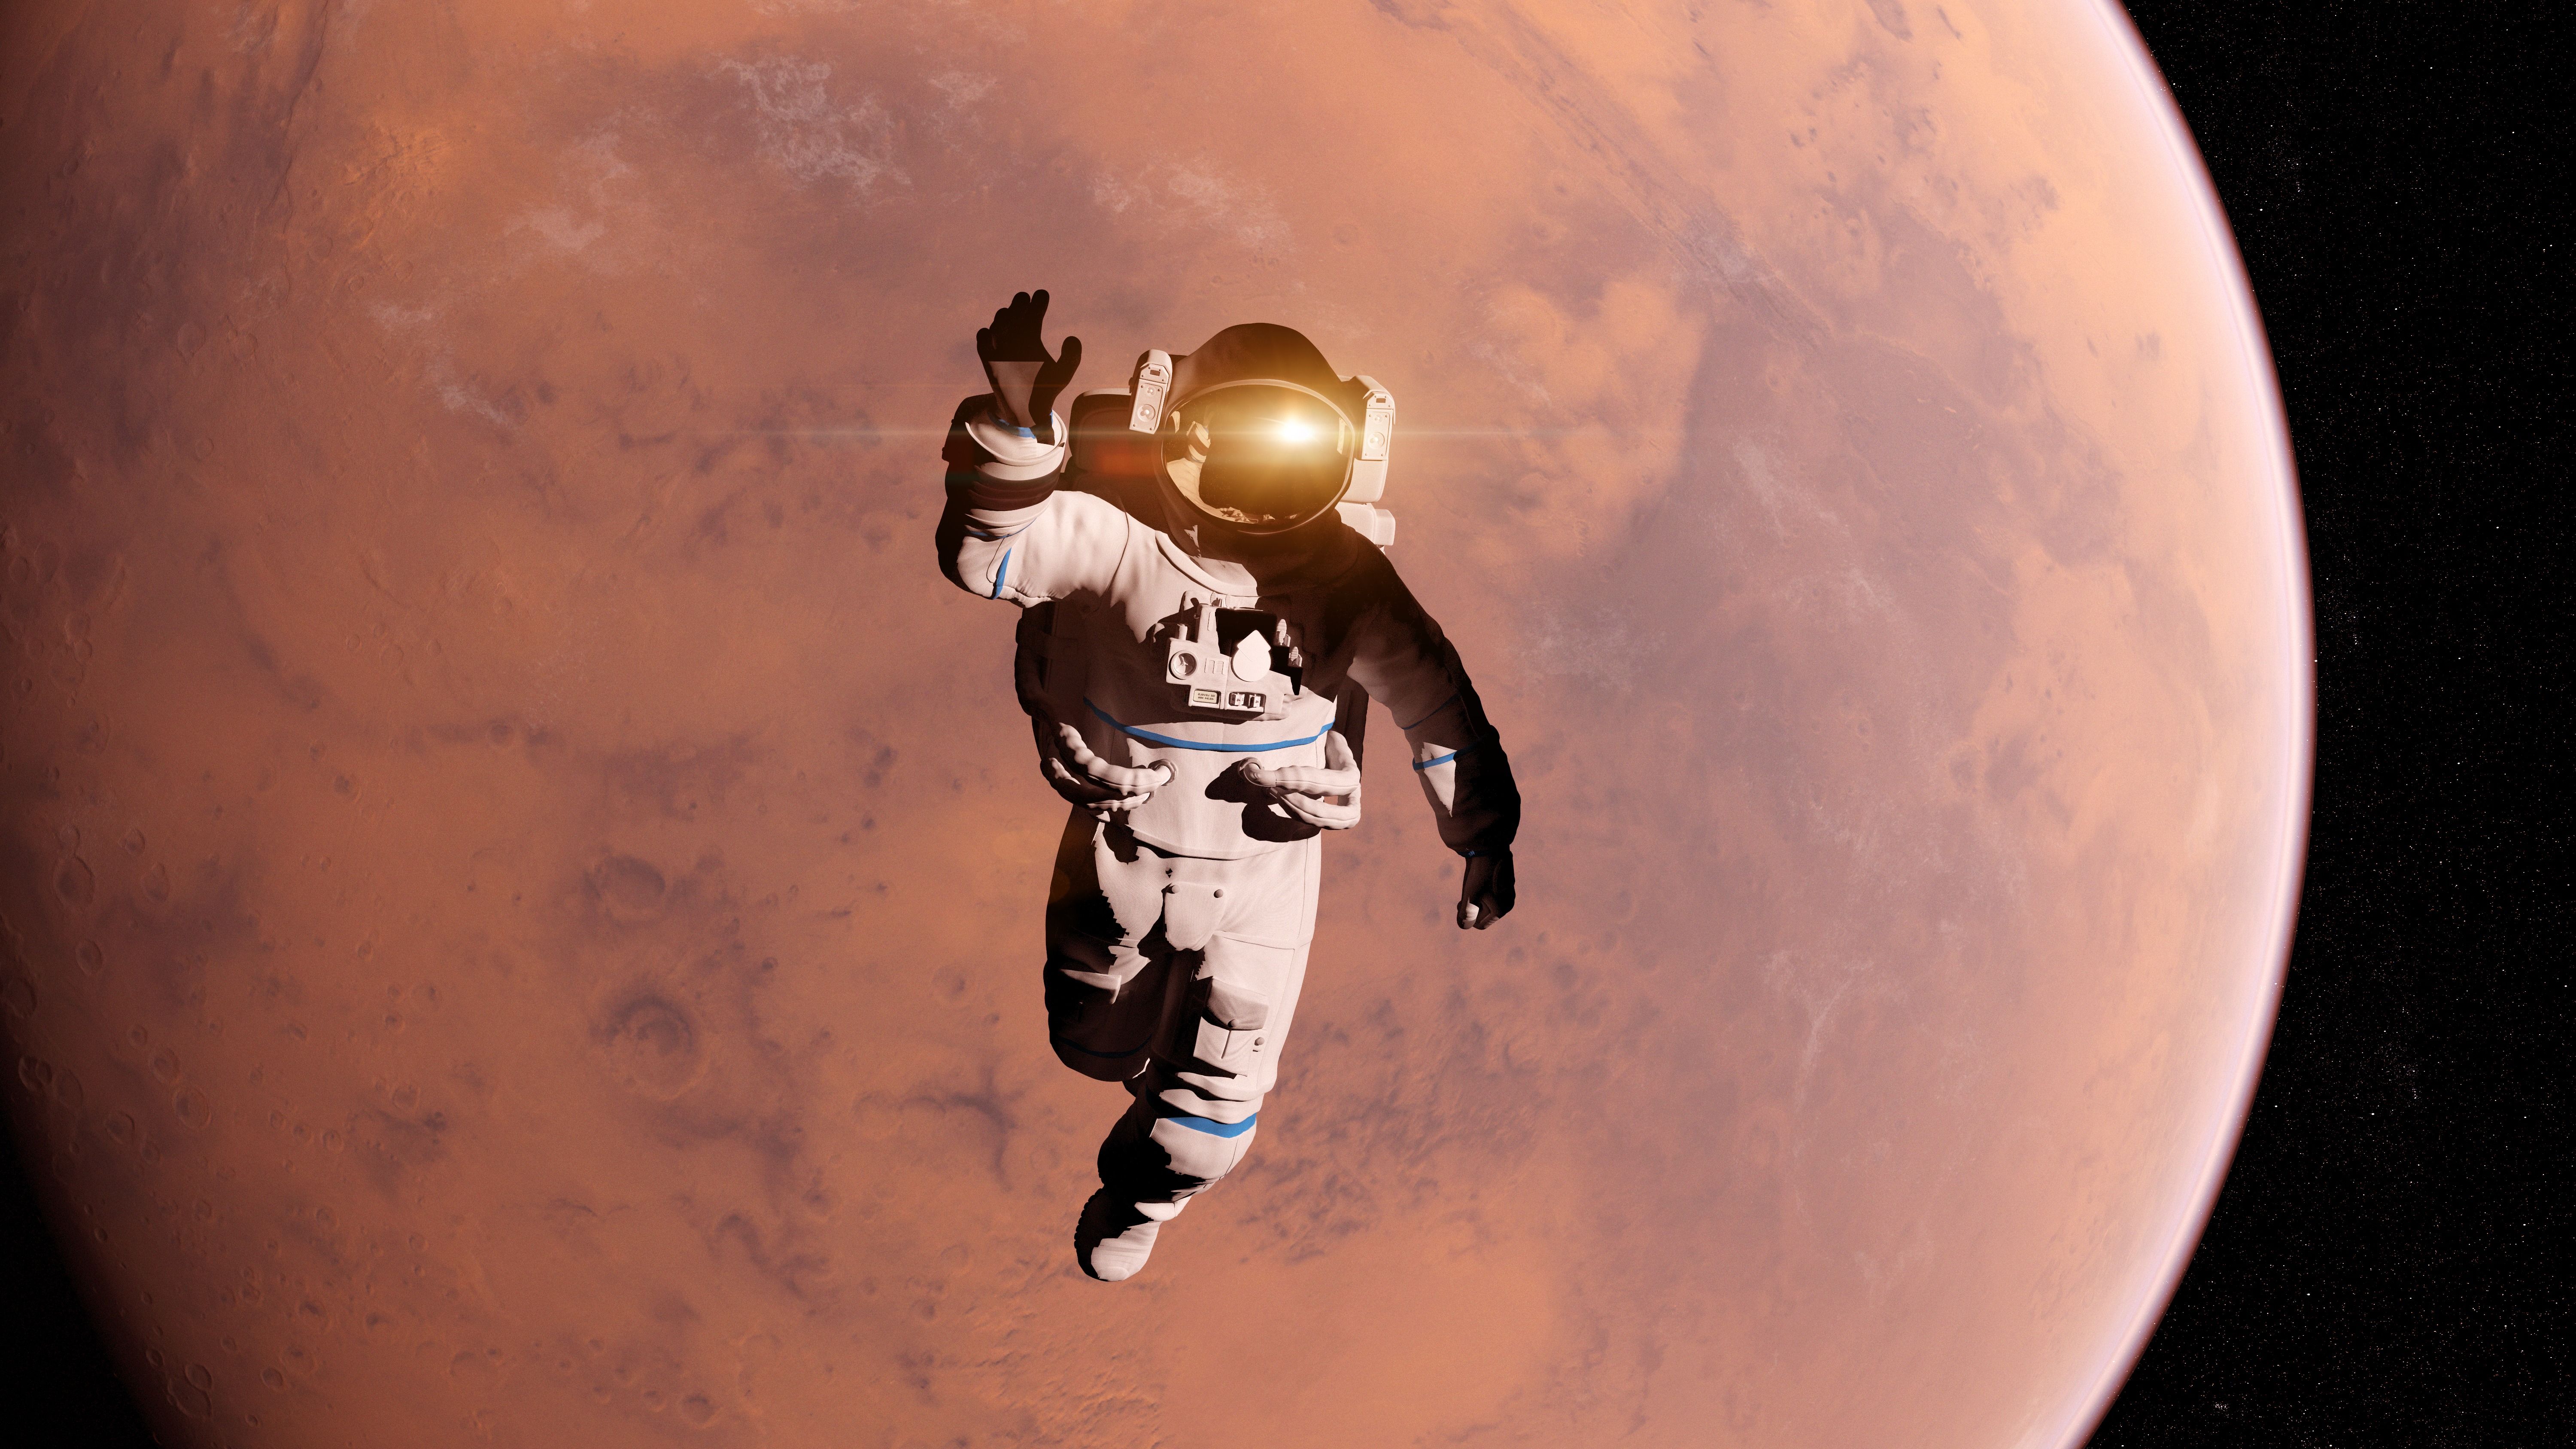 Qué pasaría si un astronauta se quita el casco en el espacio